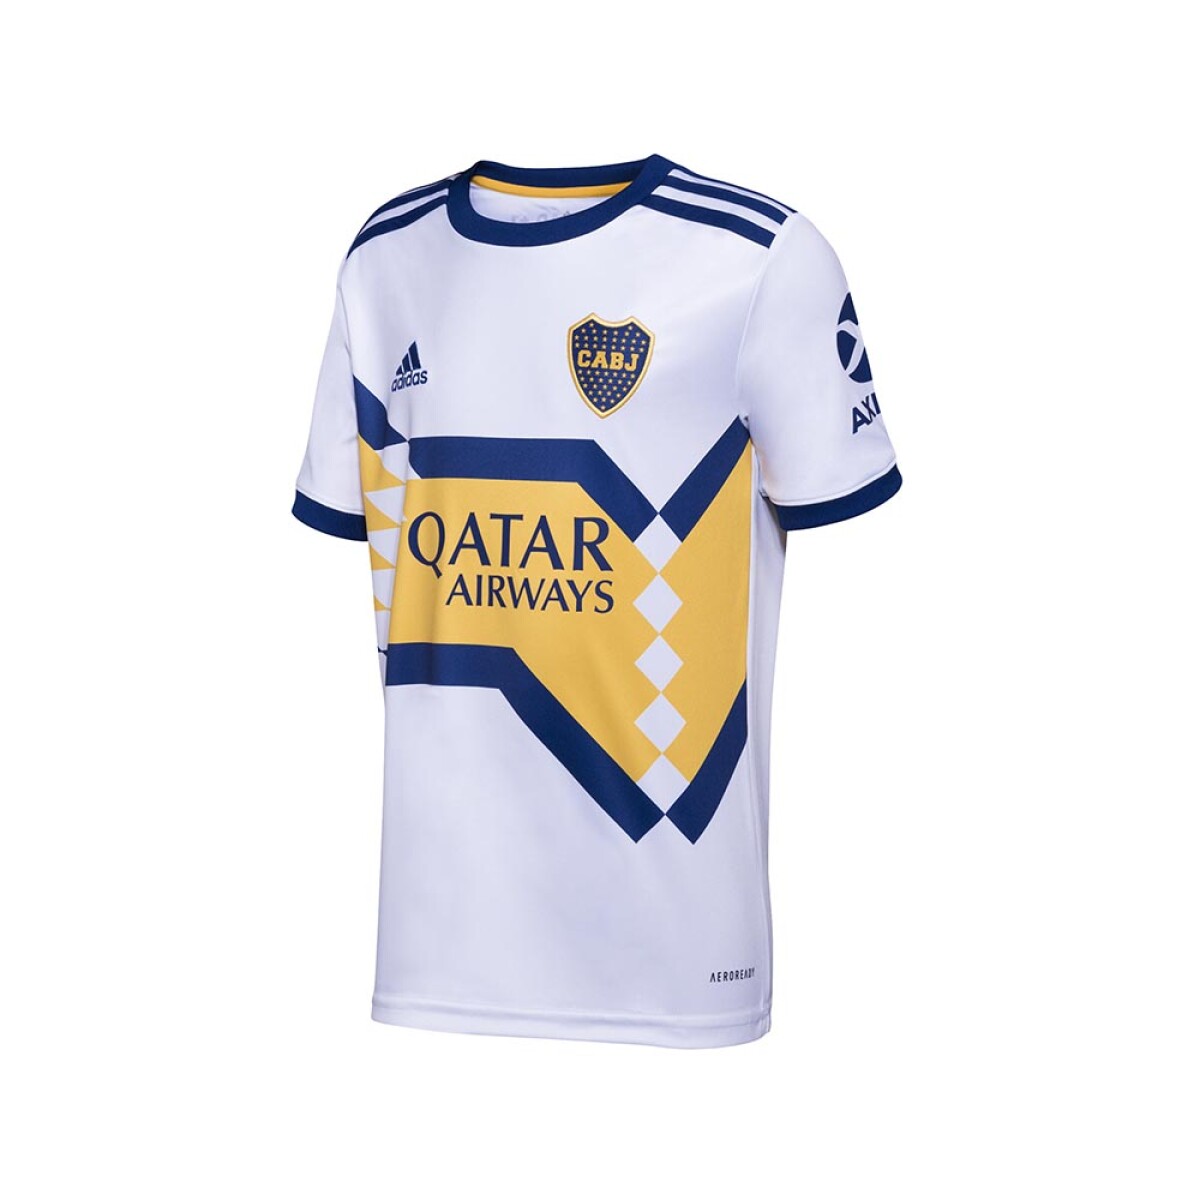 Fila de uruguay camisetas de fútbol a la venta fuera de una tienda